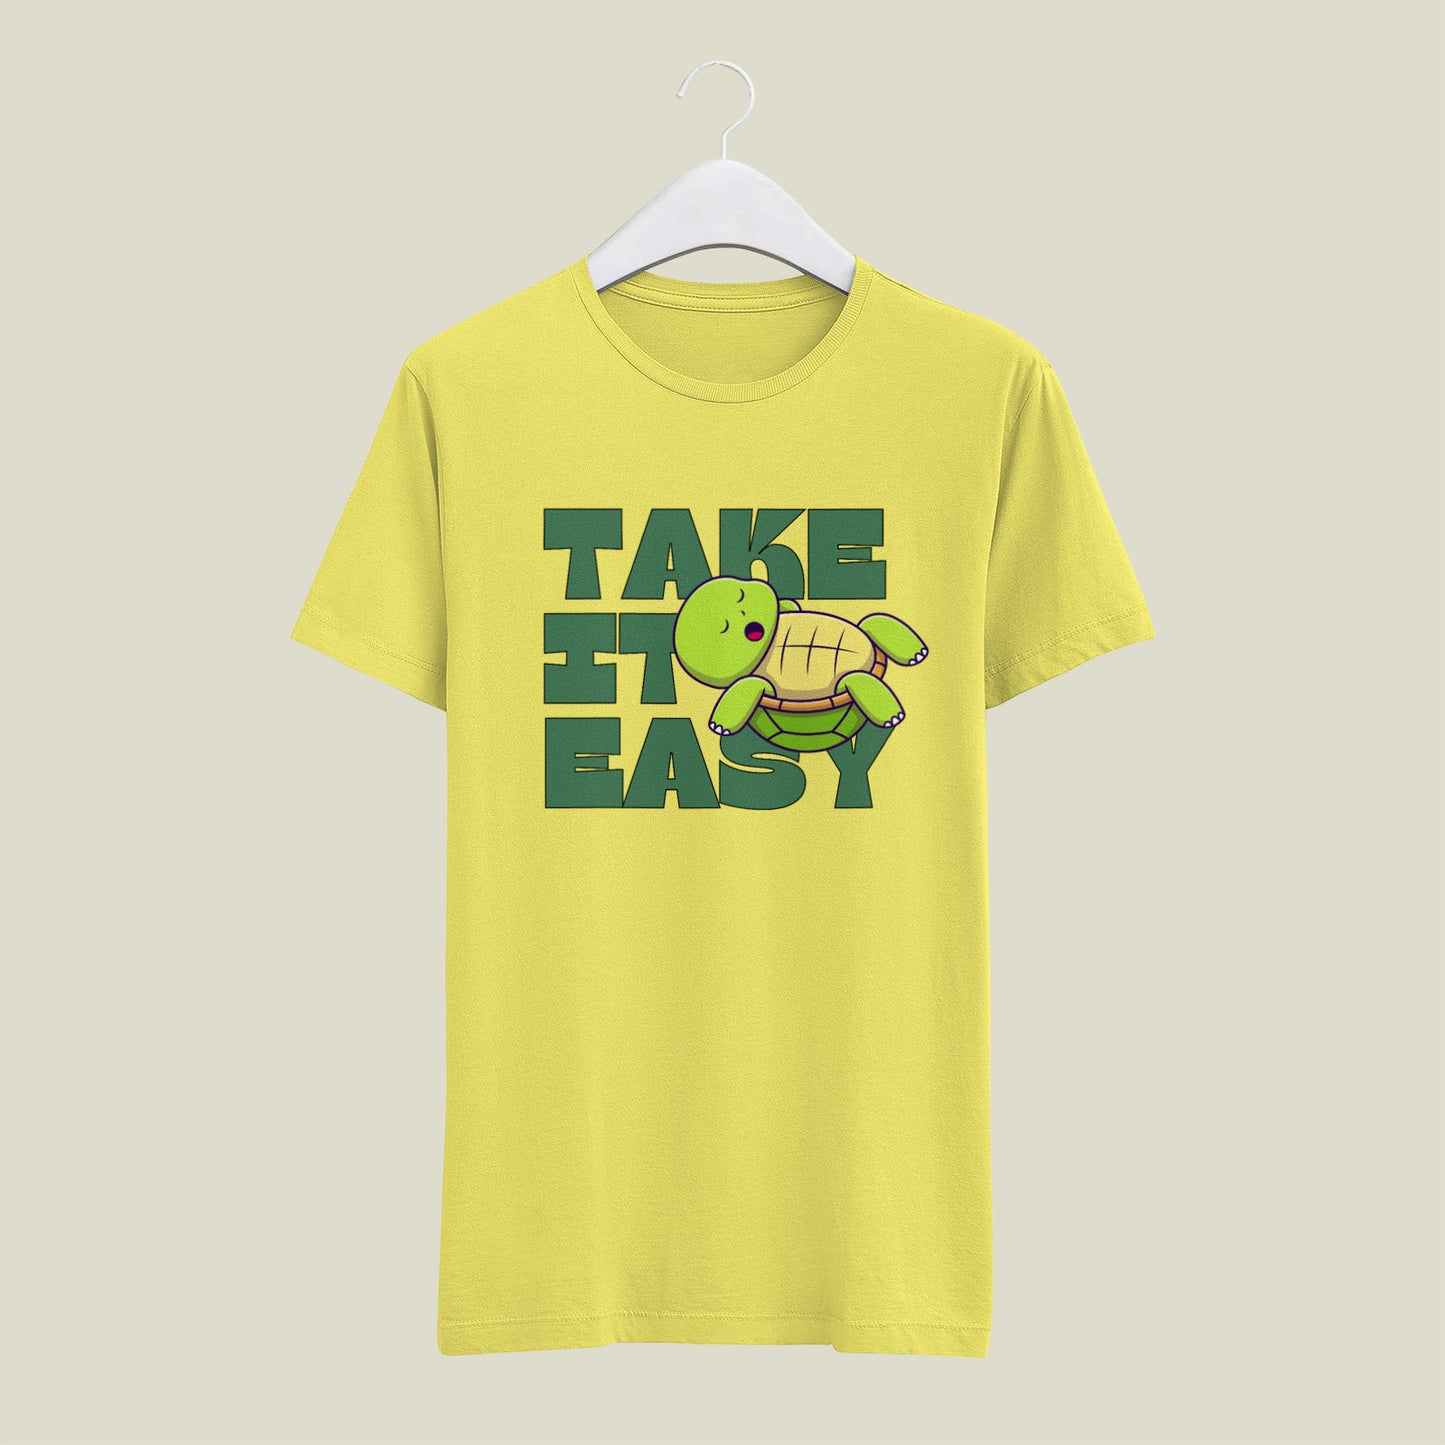 Take It Easy T shirt